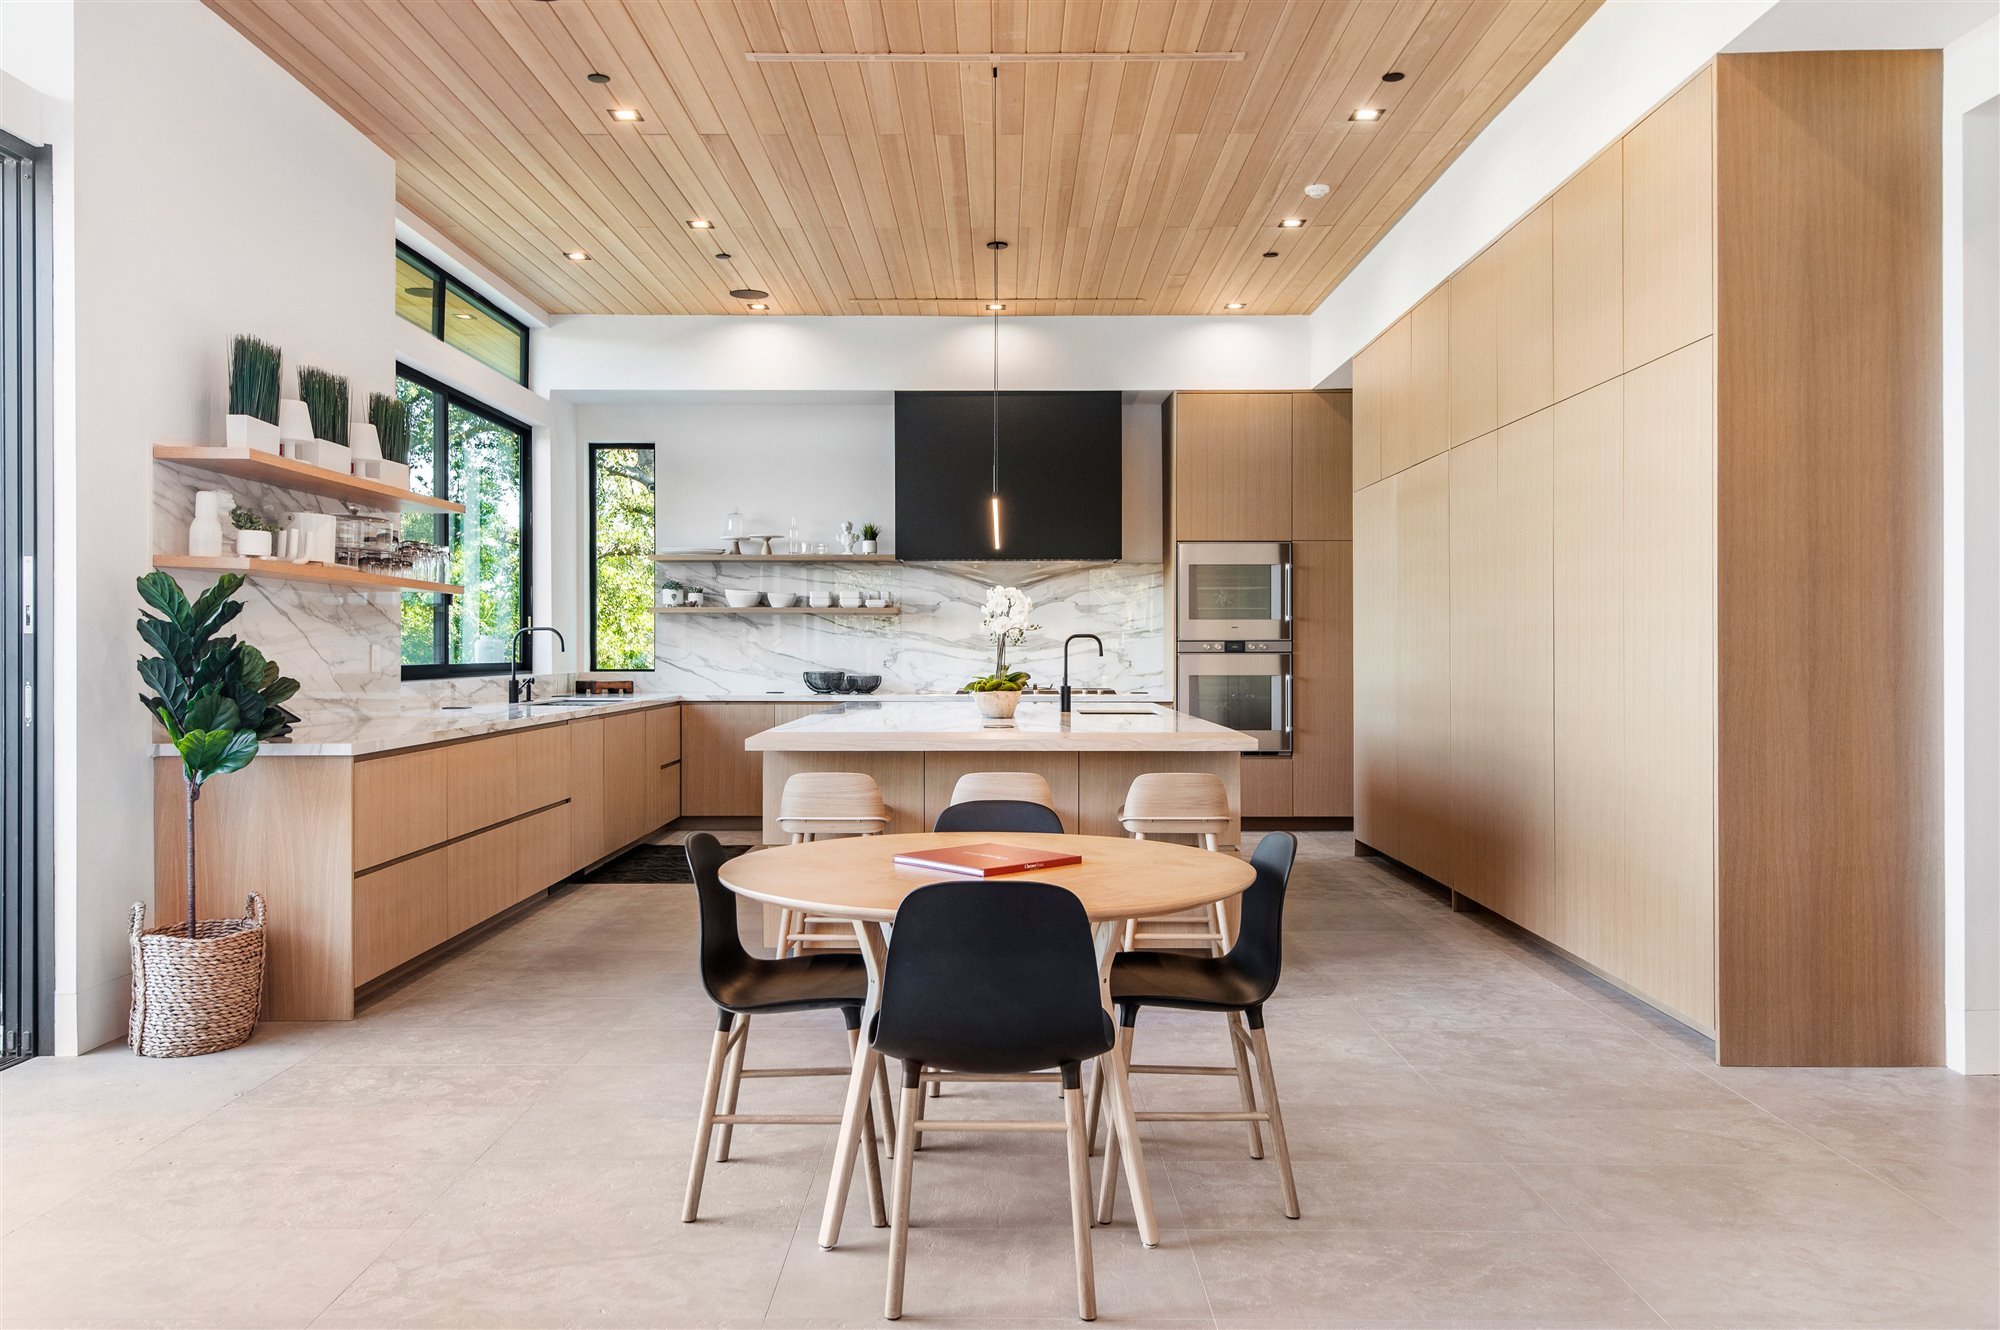 Casa moderna del actor de Modern Family Jesse Tyler Ferguson en Encino los Angeles comedor con cocina